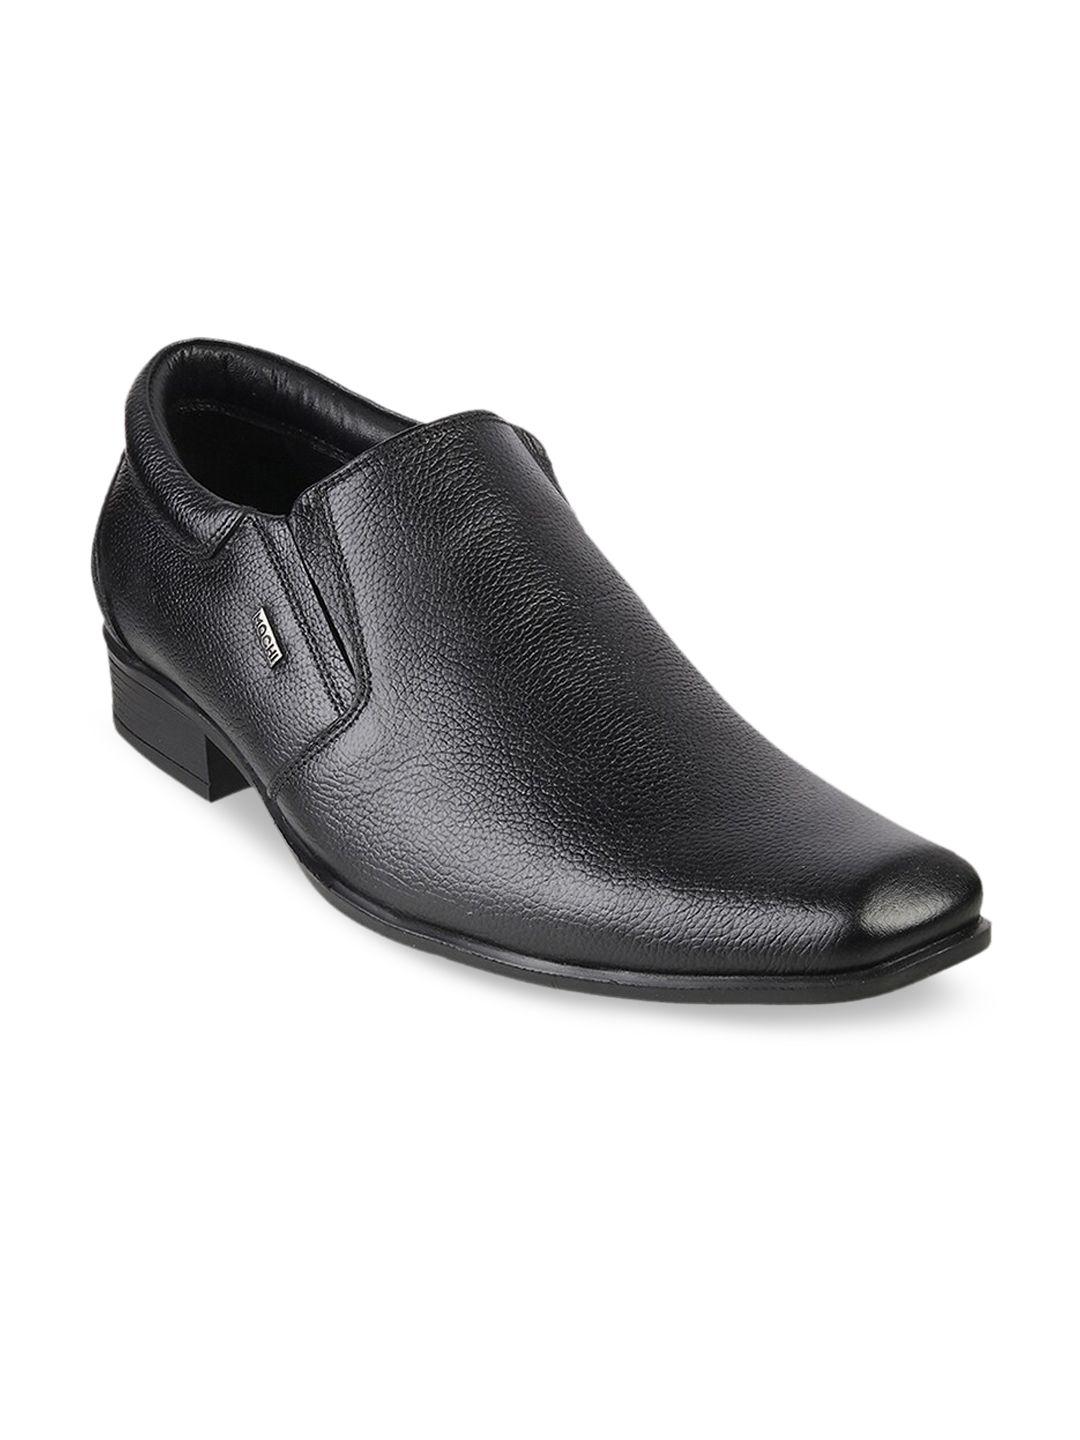 mochi-men-black-solid-leather-formal-slip-ons